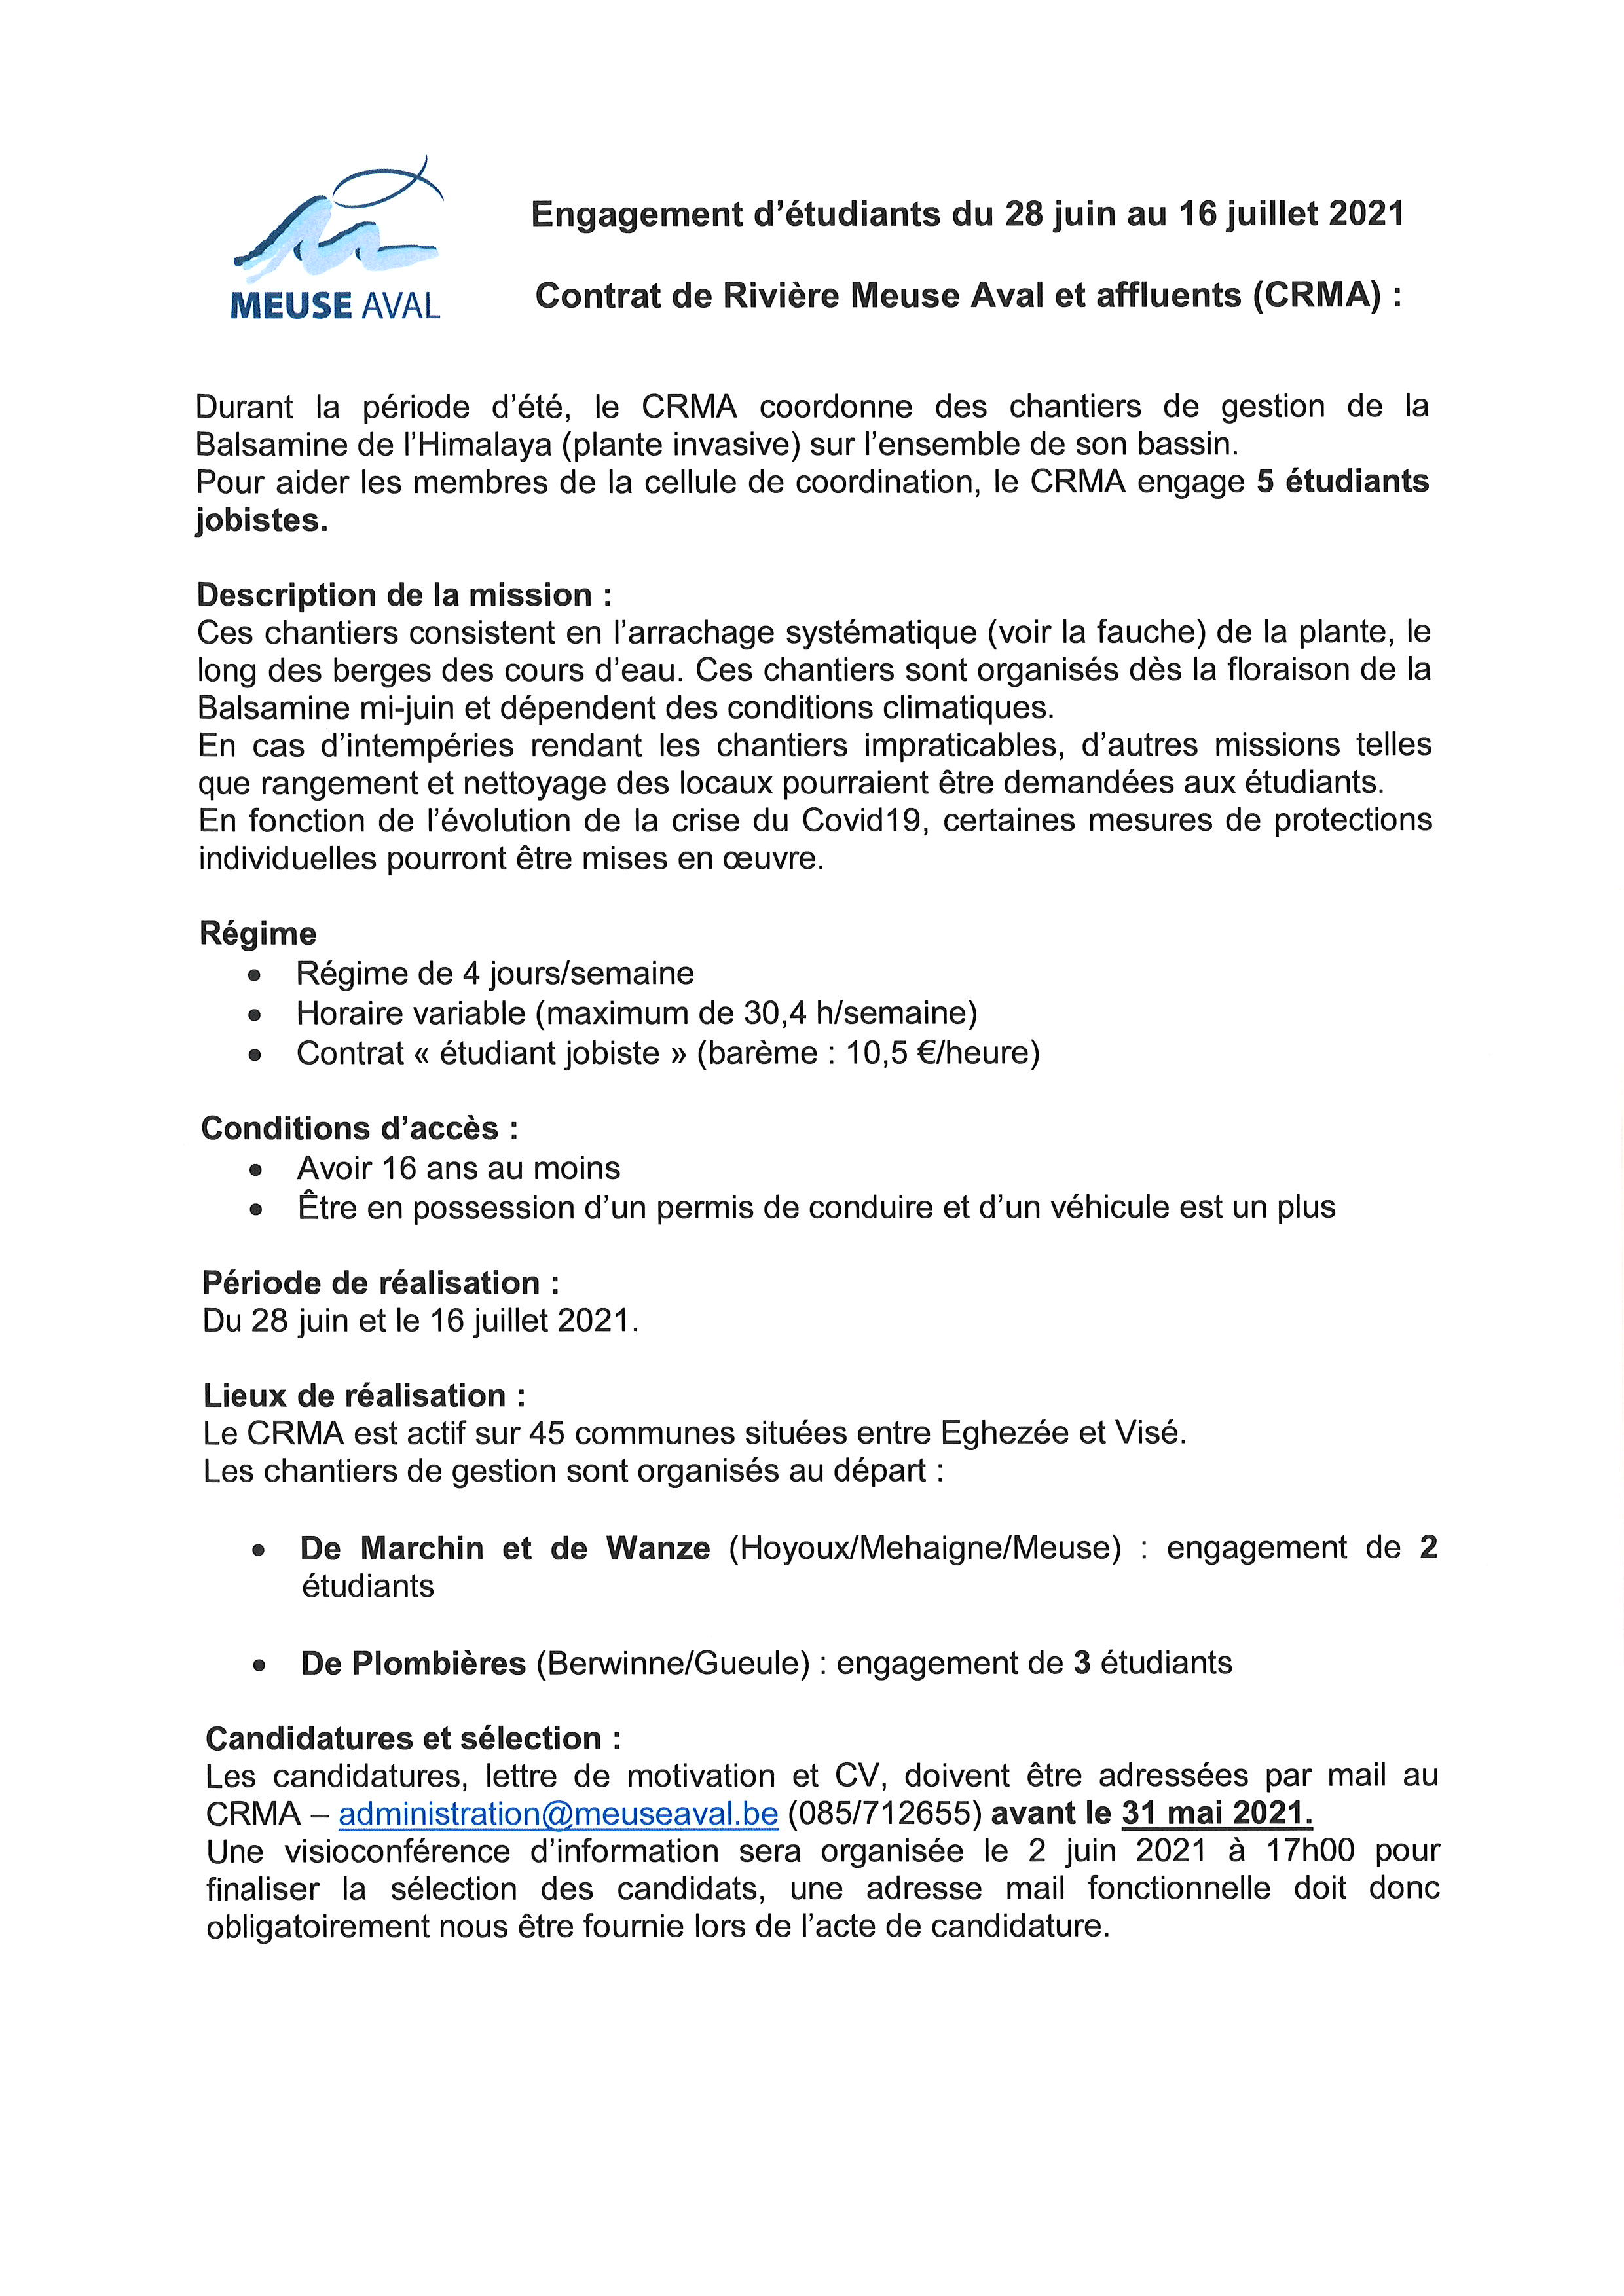 Le Contrat de Rivière Meuse Aval et affluents recrute des étudiants (28 juin - 16 juillet 2021) 